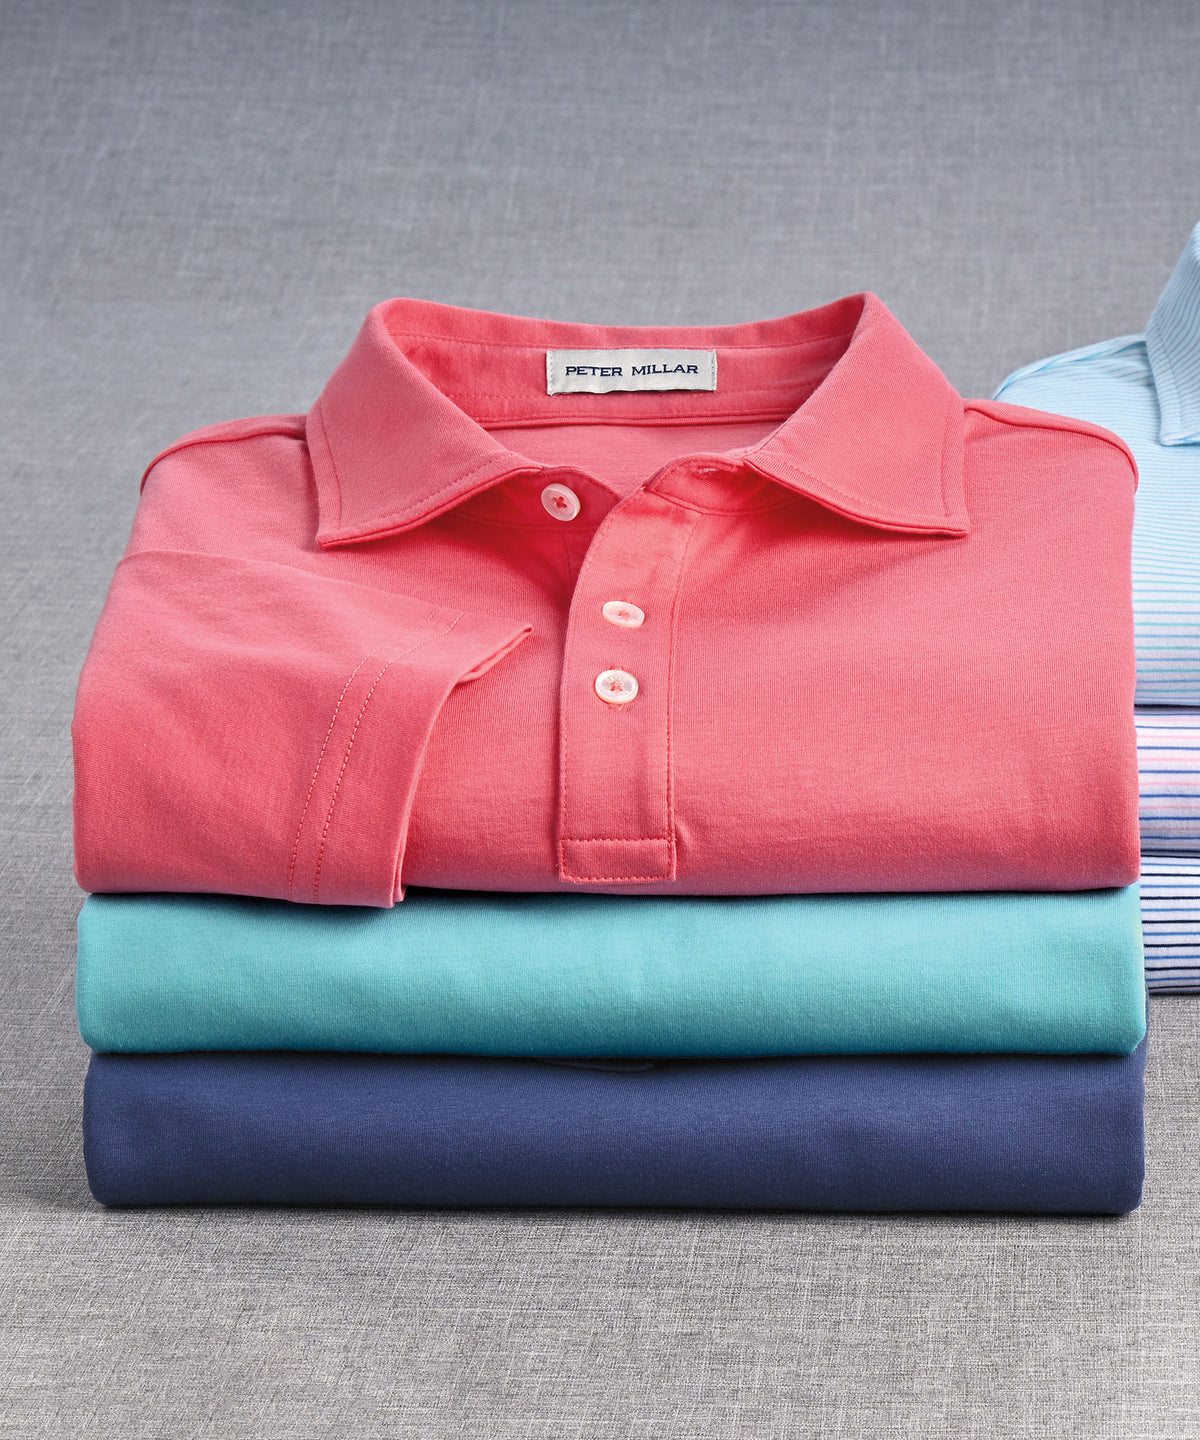 Peter Millar Short Sleeve Pilot Mill Polo Knit Shirt, Big & Tall